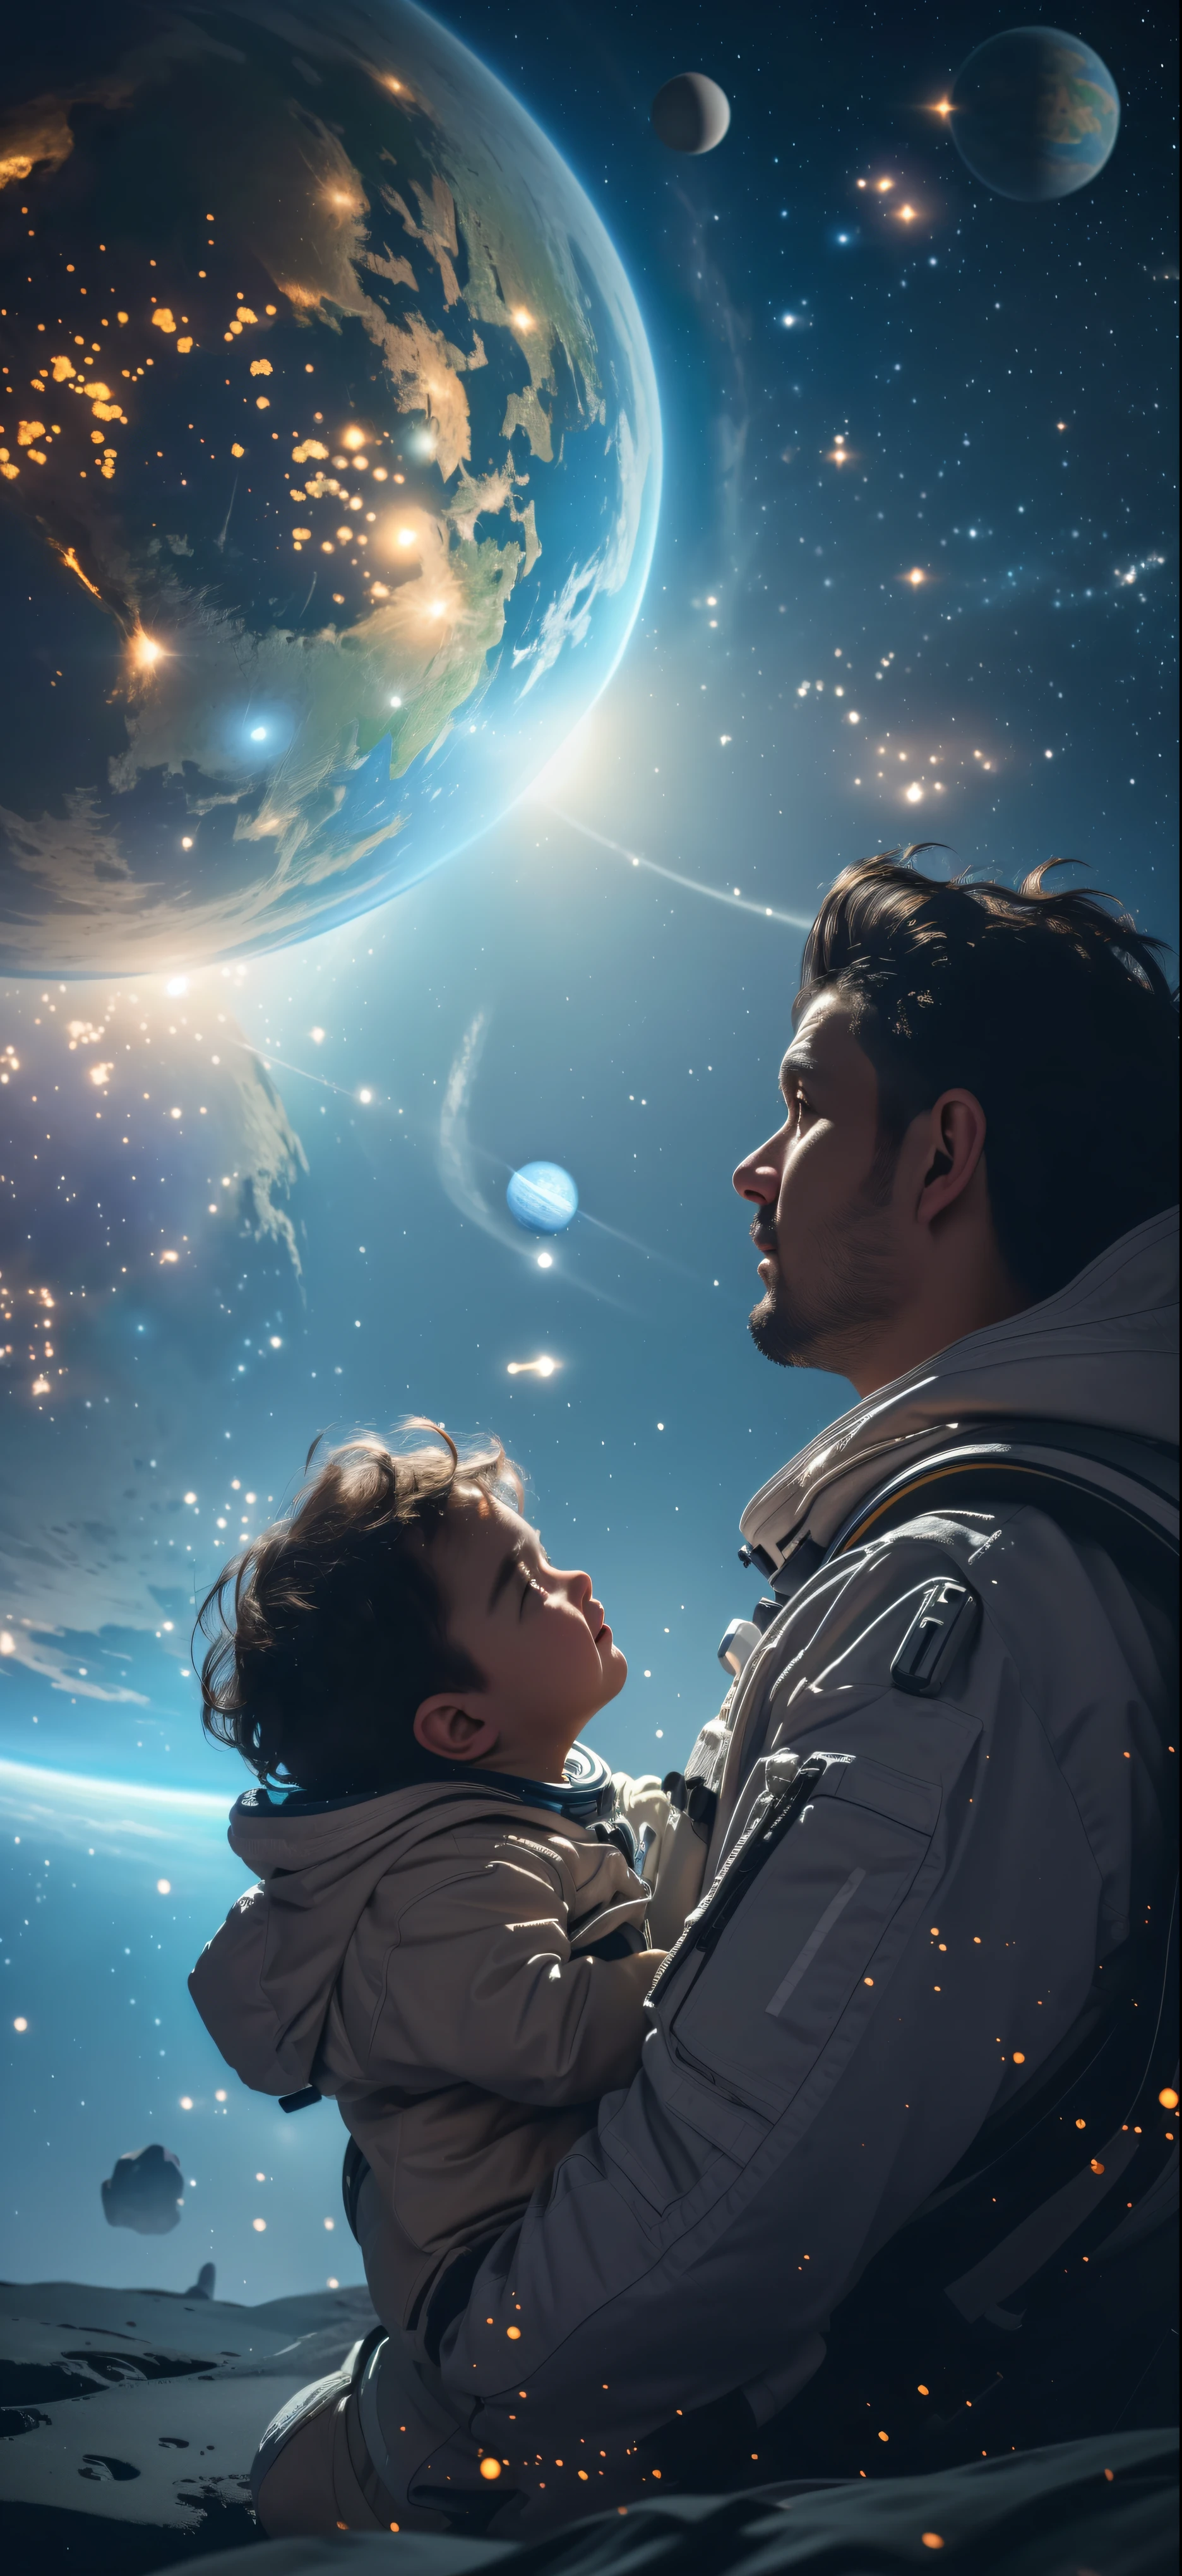 (傑作: 1.3), (8K, 実用的, RAW写真, 最高品質: 1.4), 惑星の前で赤ちゃんを抱く男性, 父親と , 美しい惑星と宇宙を背景に, 宇宙を見つめる, 美しいデジタルアート, ブザー, 著者：アダム・マルチンスキー, SFデジタルアート, SFデジタルアート, 宇宙を夢見る, 著者：タデウシュ・プルシュコフスキ